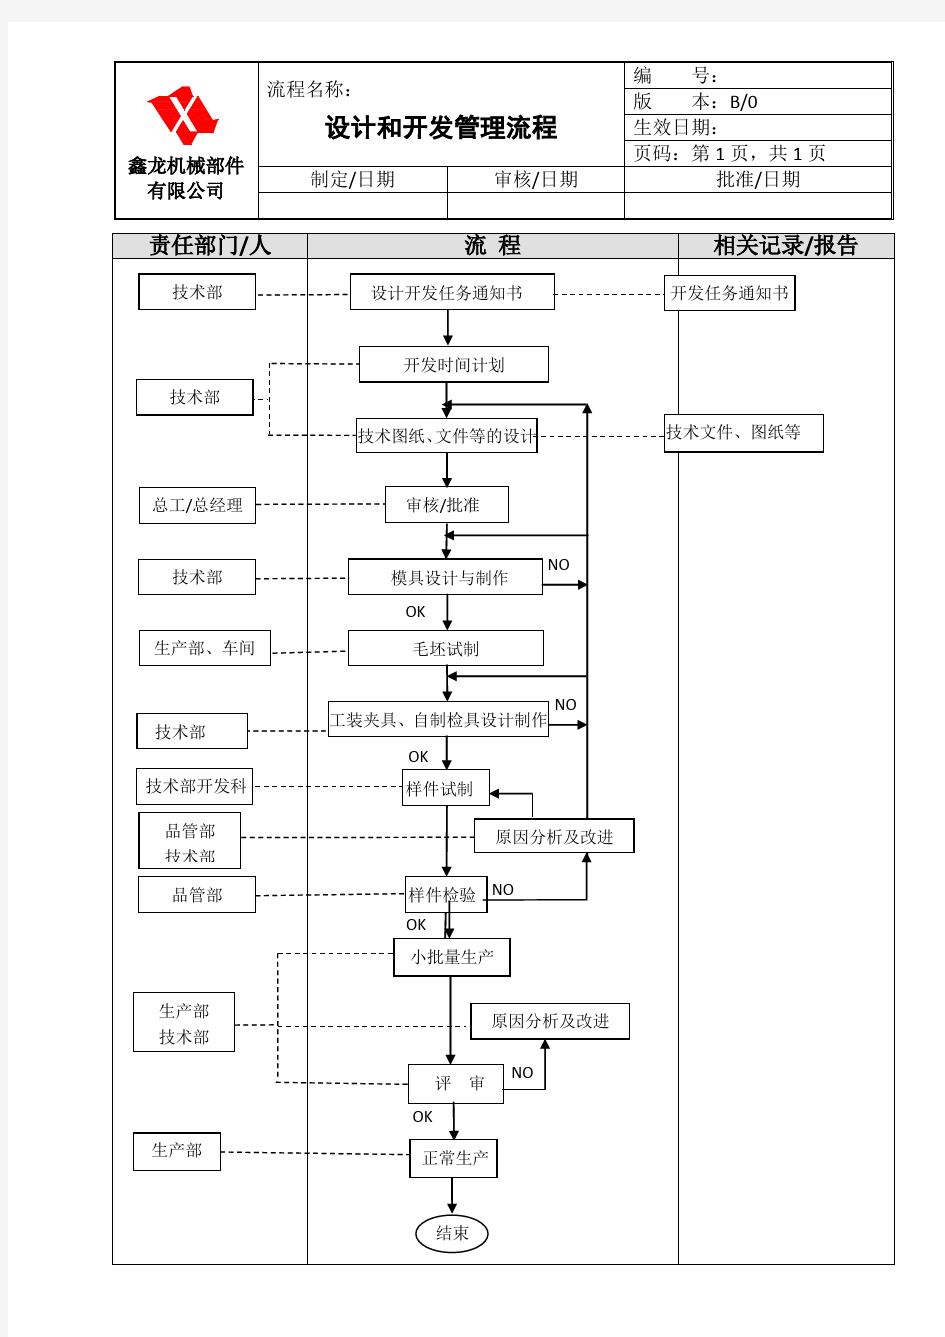 鑫龙机械部件有限公司各部门工作流程图